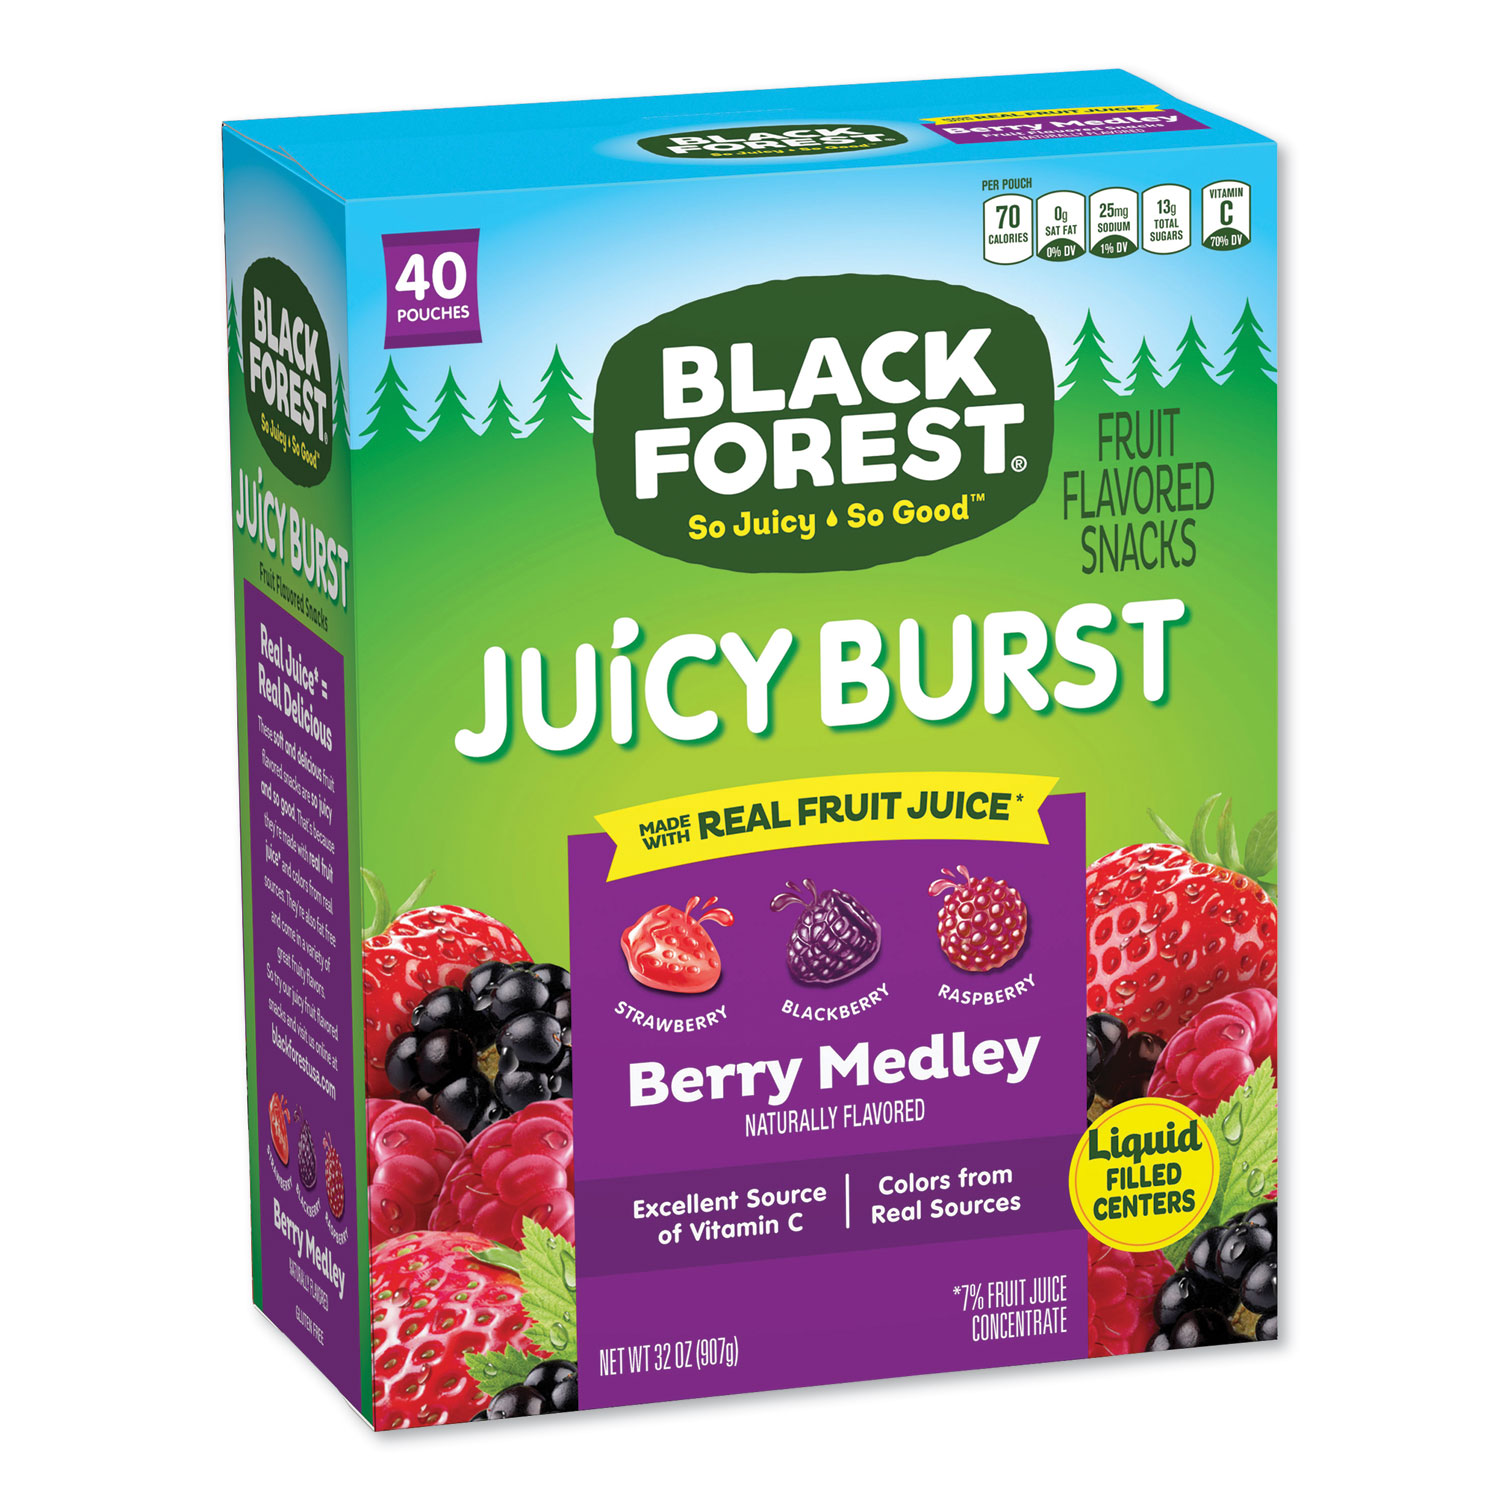  Black Forest FER02067 Juicy Burst Fruit Flavored Snack, Berry Medley, 32 oz, 40/Box (BLF24337024) 